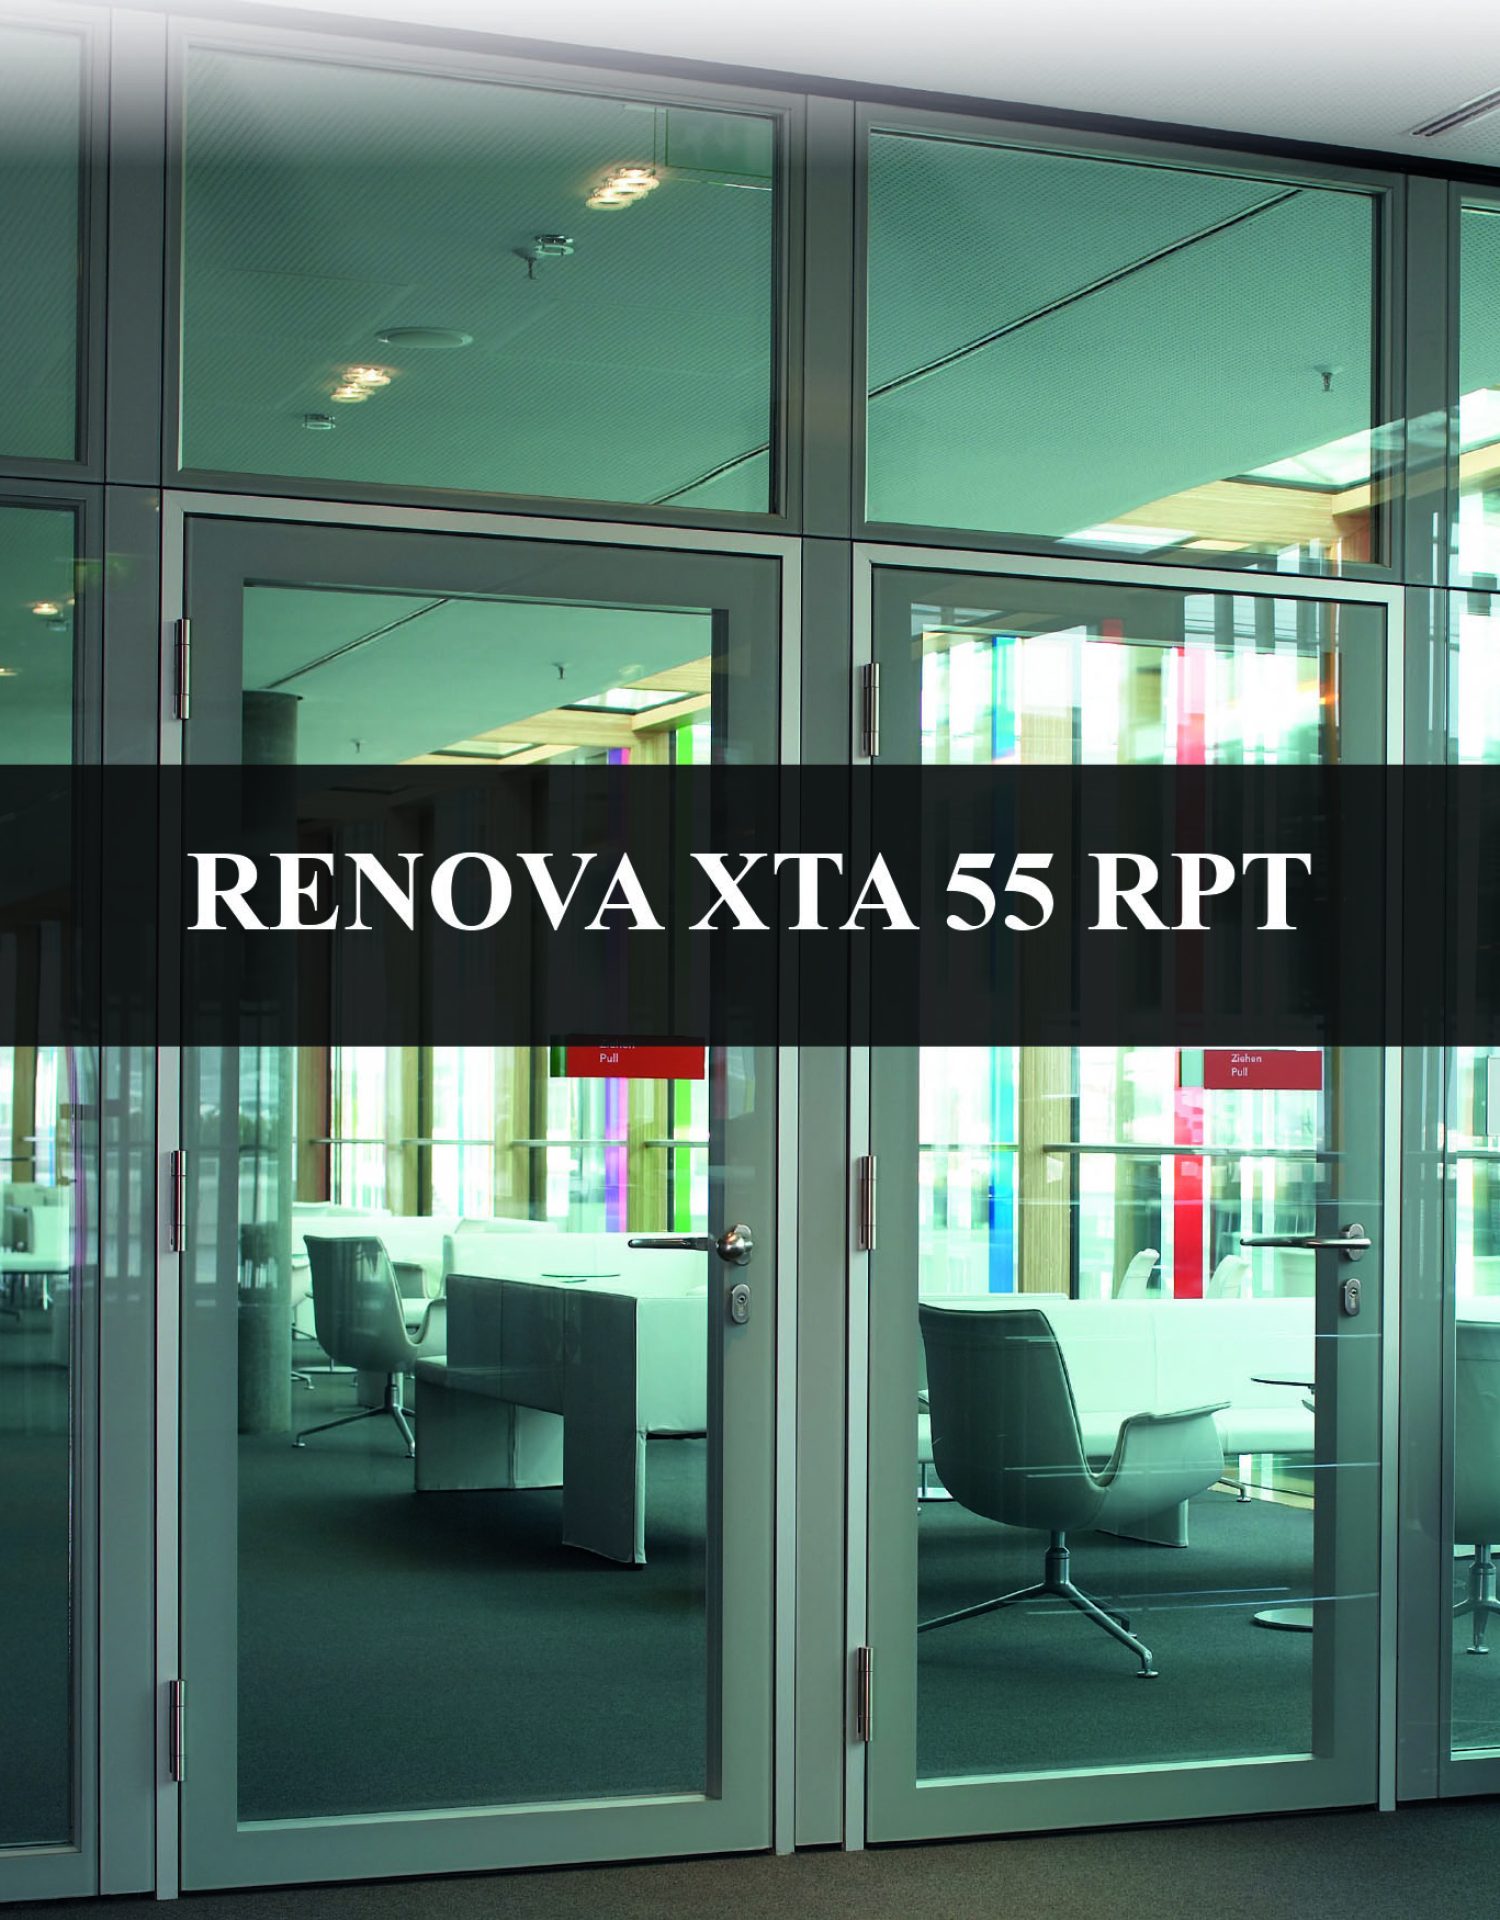 RENOVA XTA 55 RPT